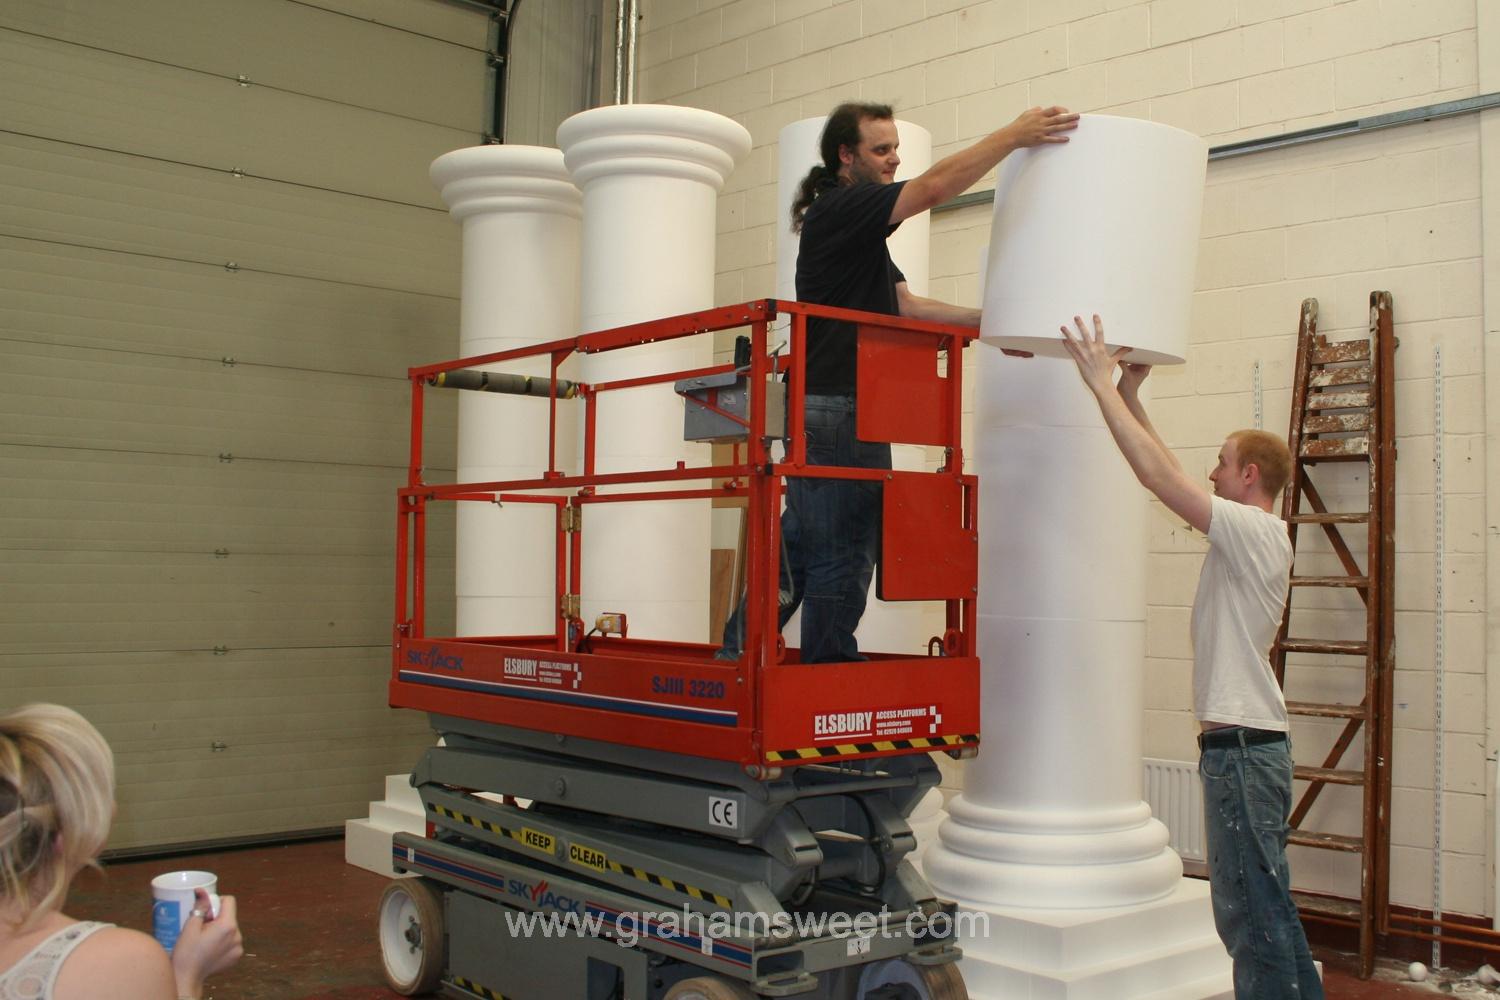 plain white polystyrene pillars